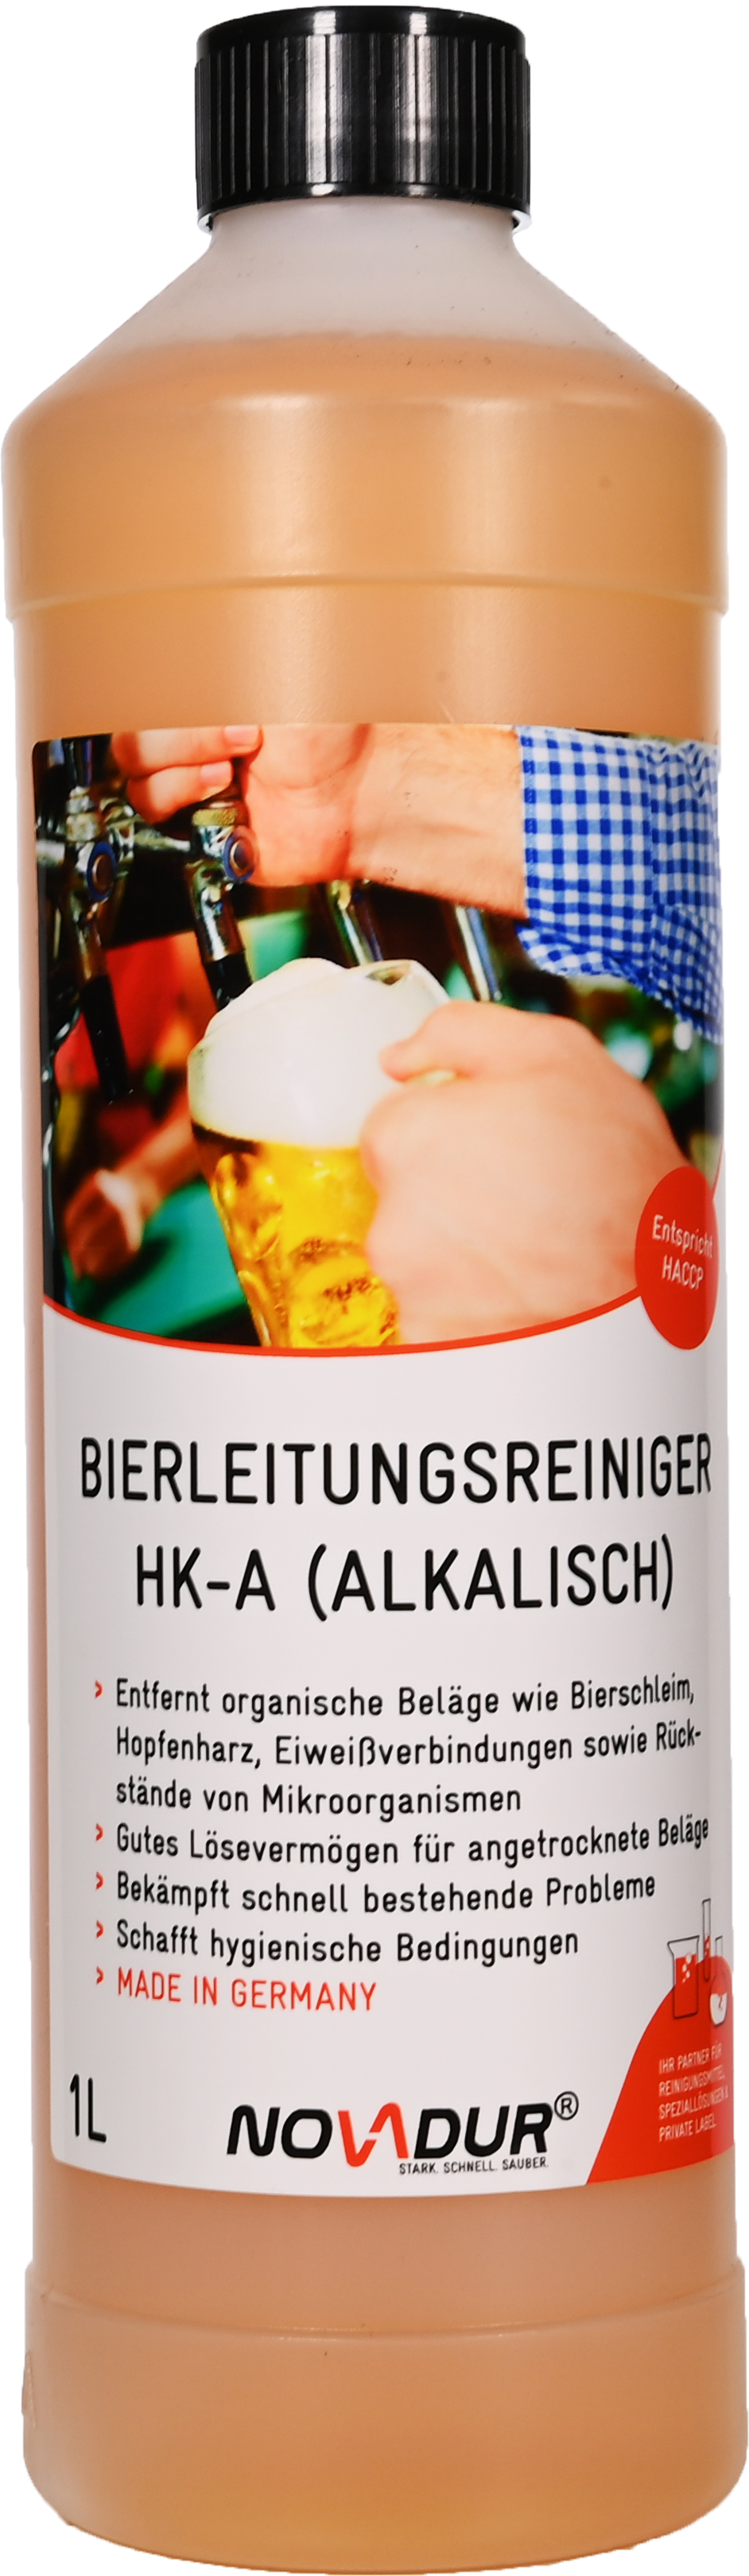 Bierleitungsreiniger HK-A (alkalisch)